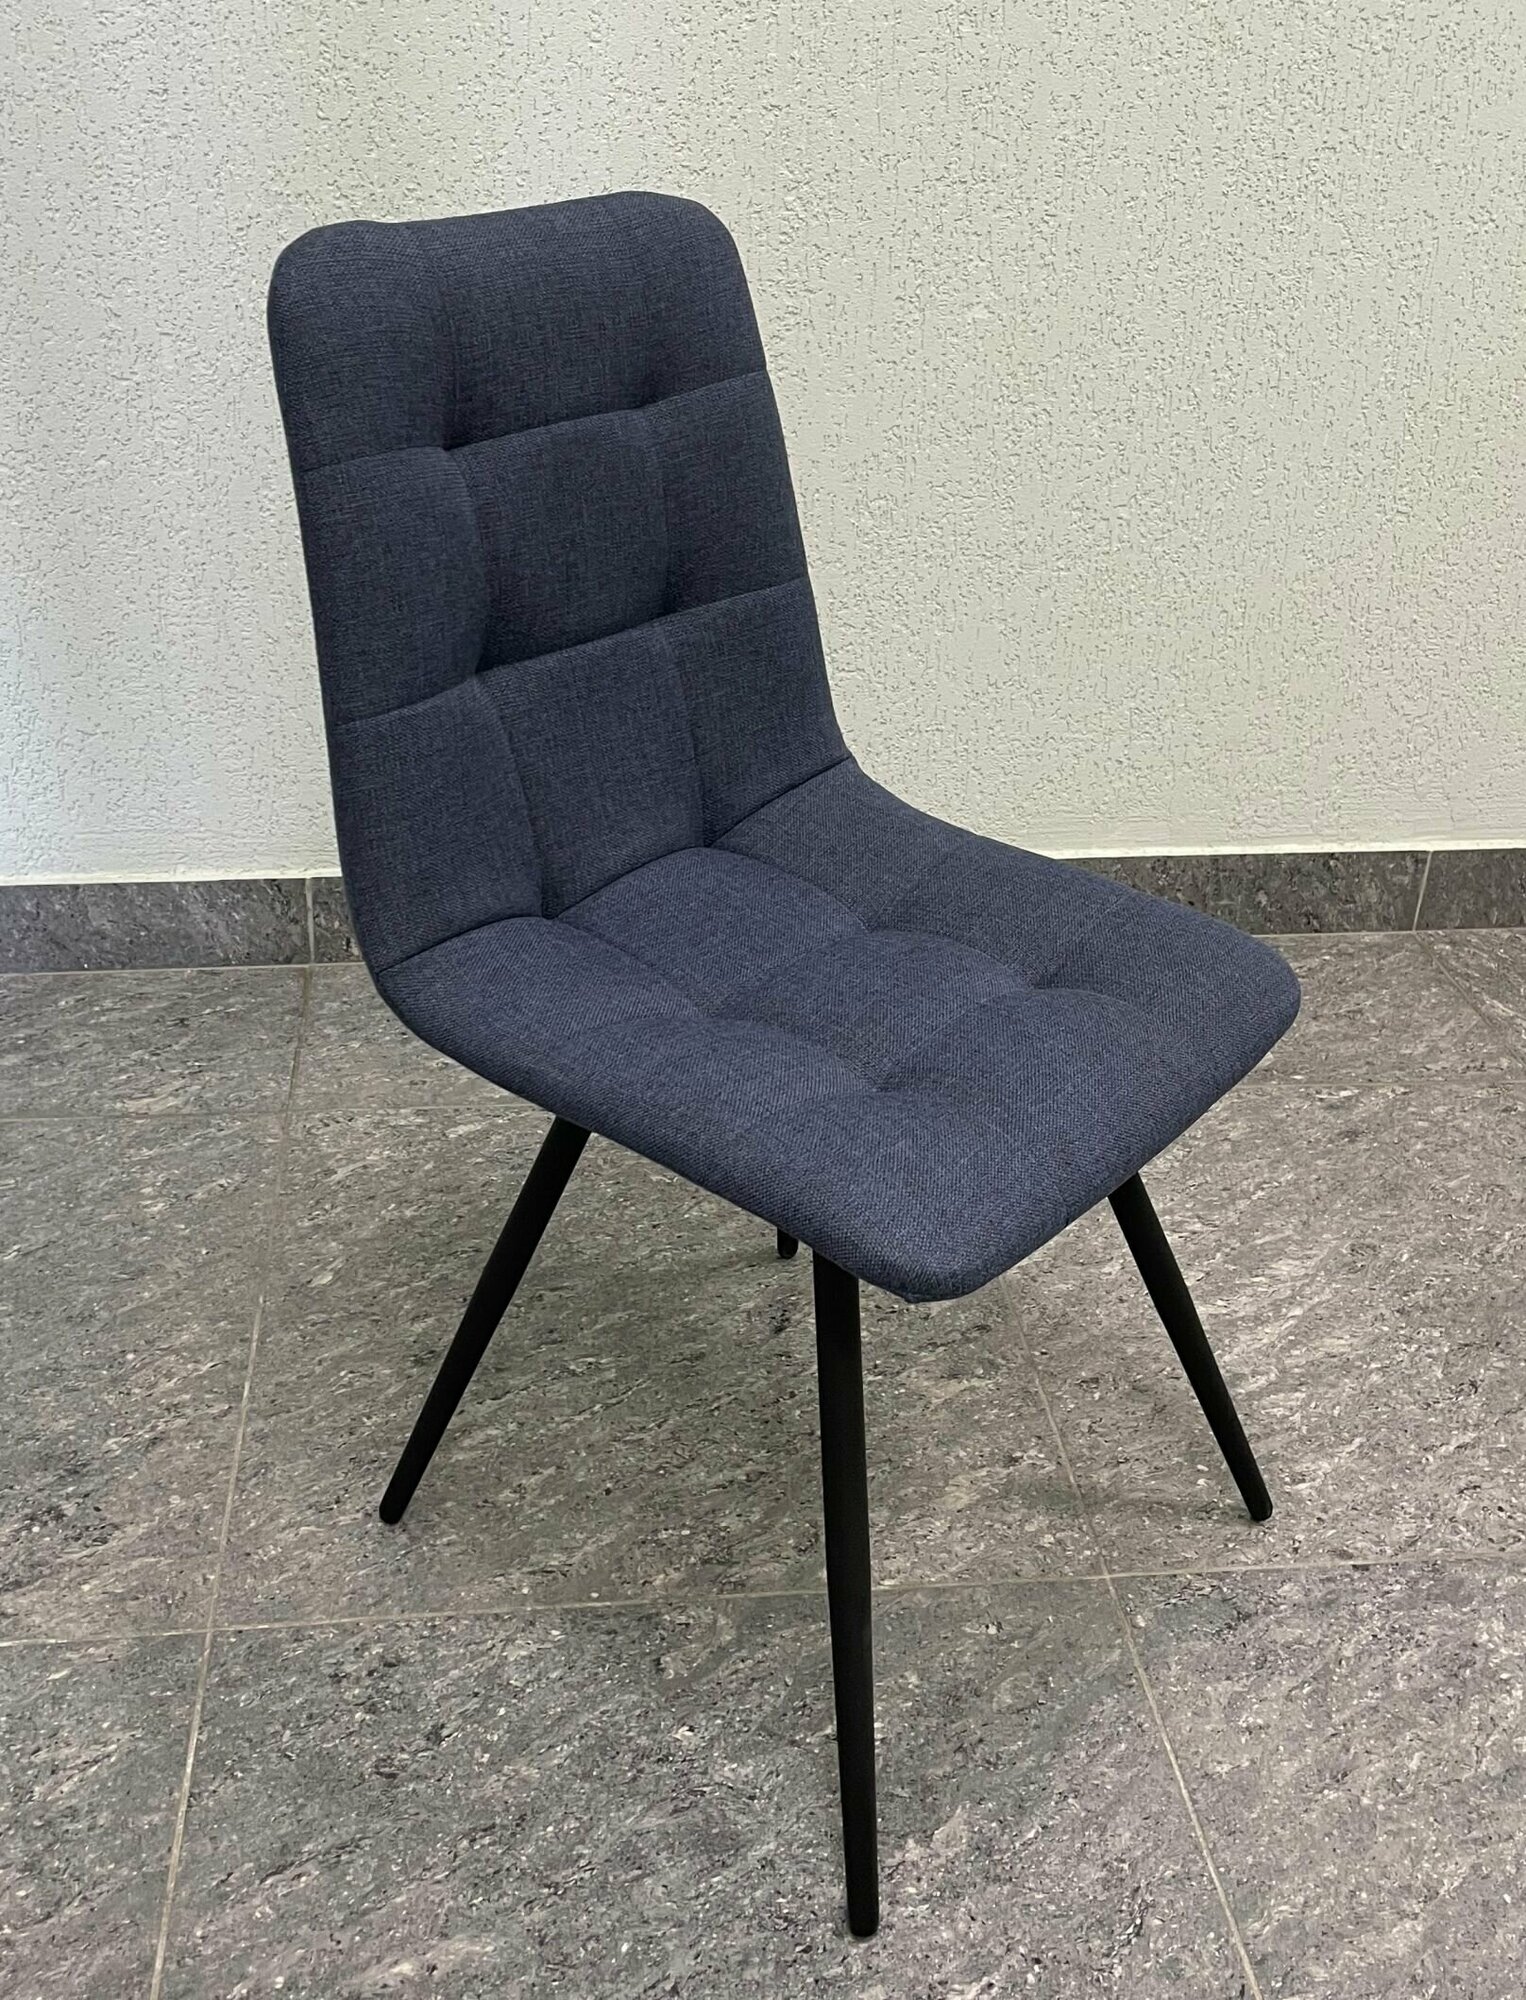 Стул мягкий для кухни/комплект стульев/стул из рогожки/новый стильный стул, цвет темно-синий с черными ножками /2 шт